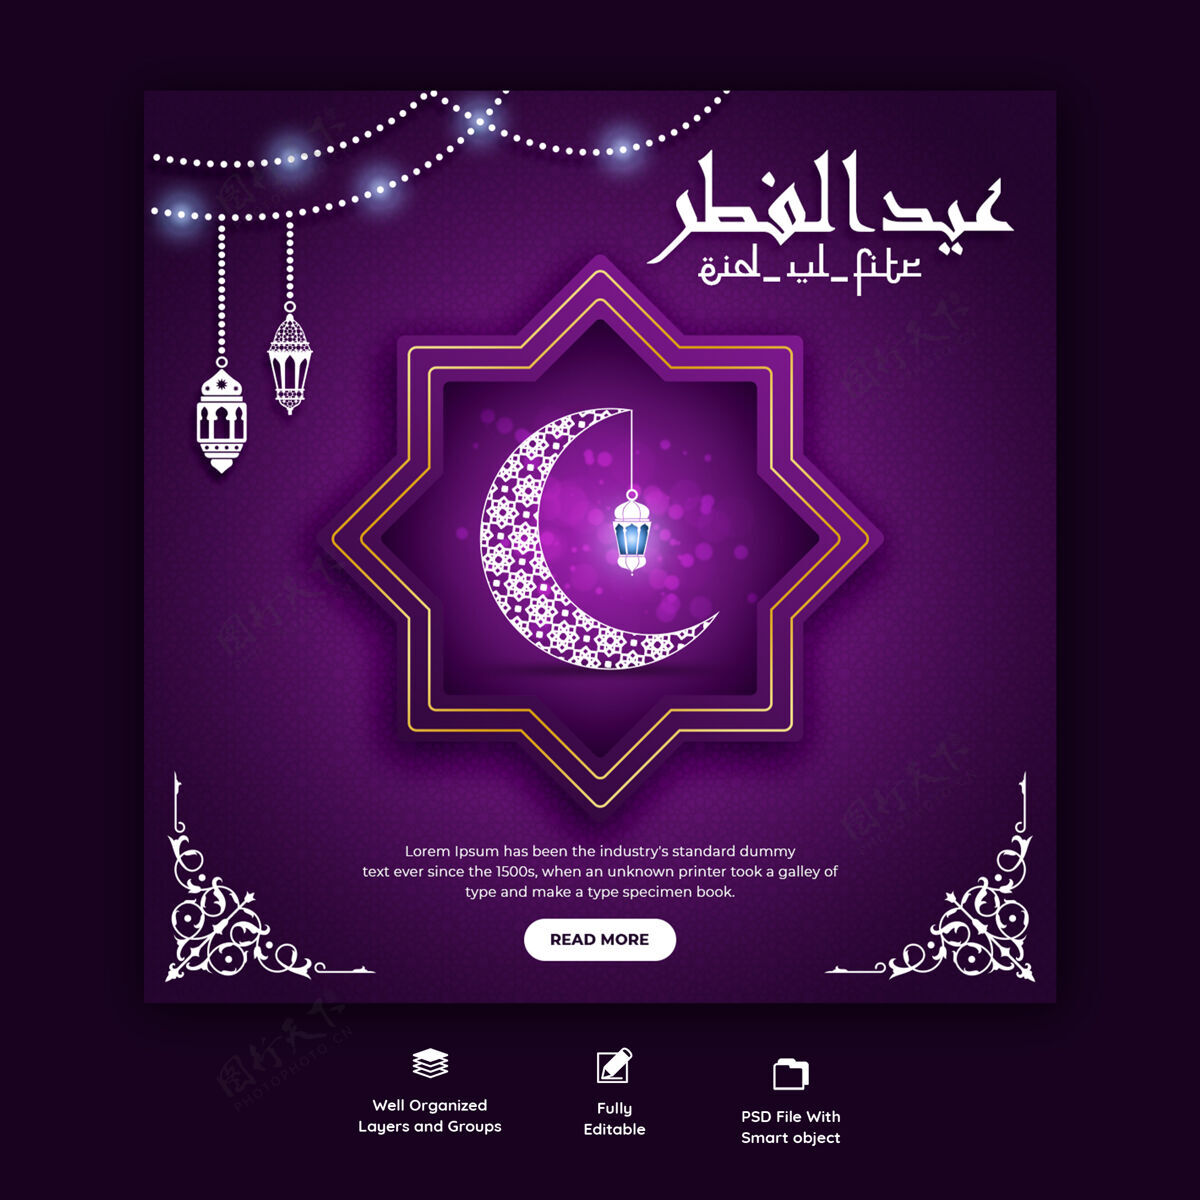 穆斯林开斋节穆巴拉克和开斋节ulfitr社会媒体横幅模板伊斯兰节日Instagram促销